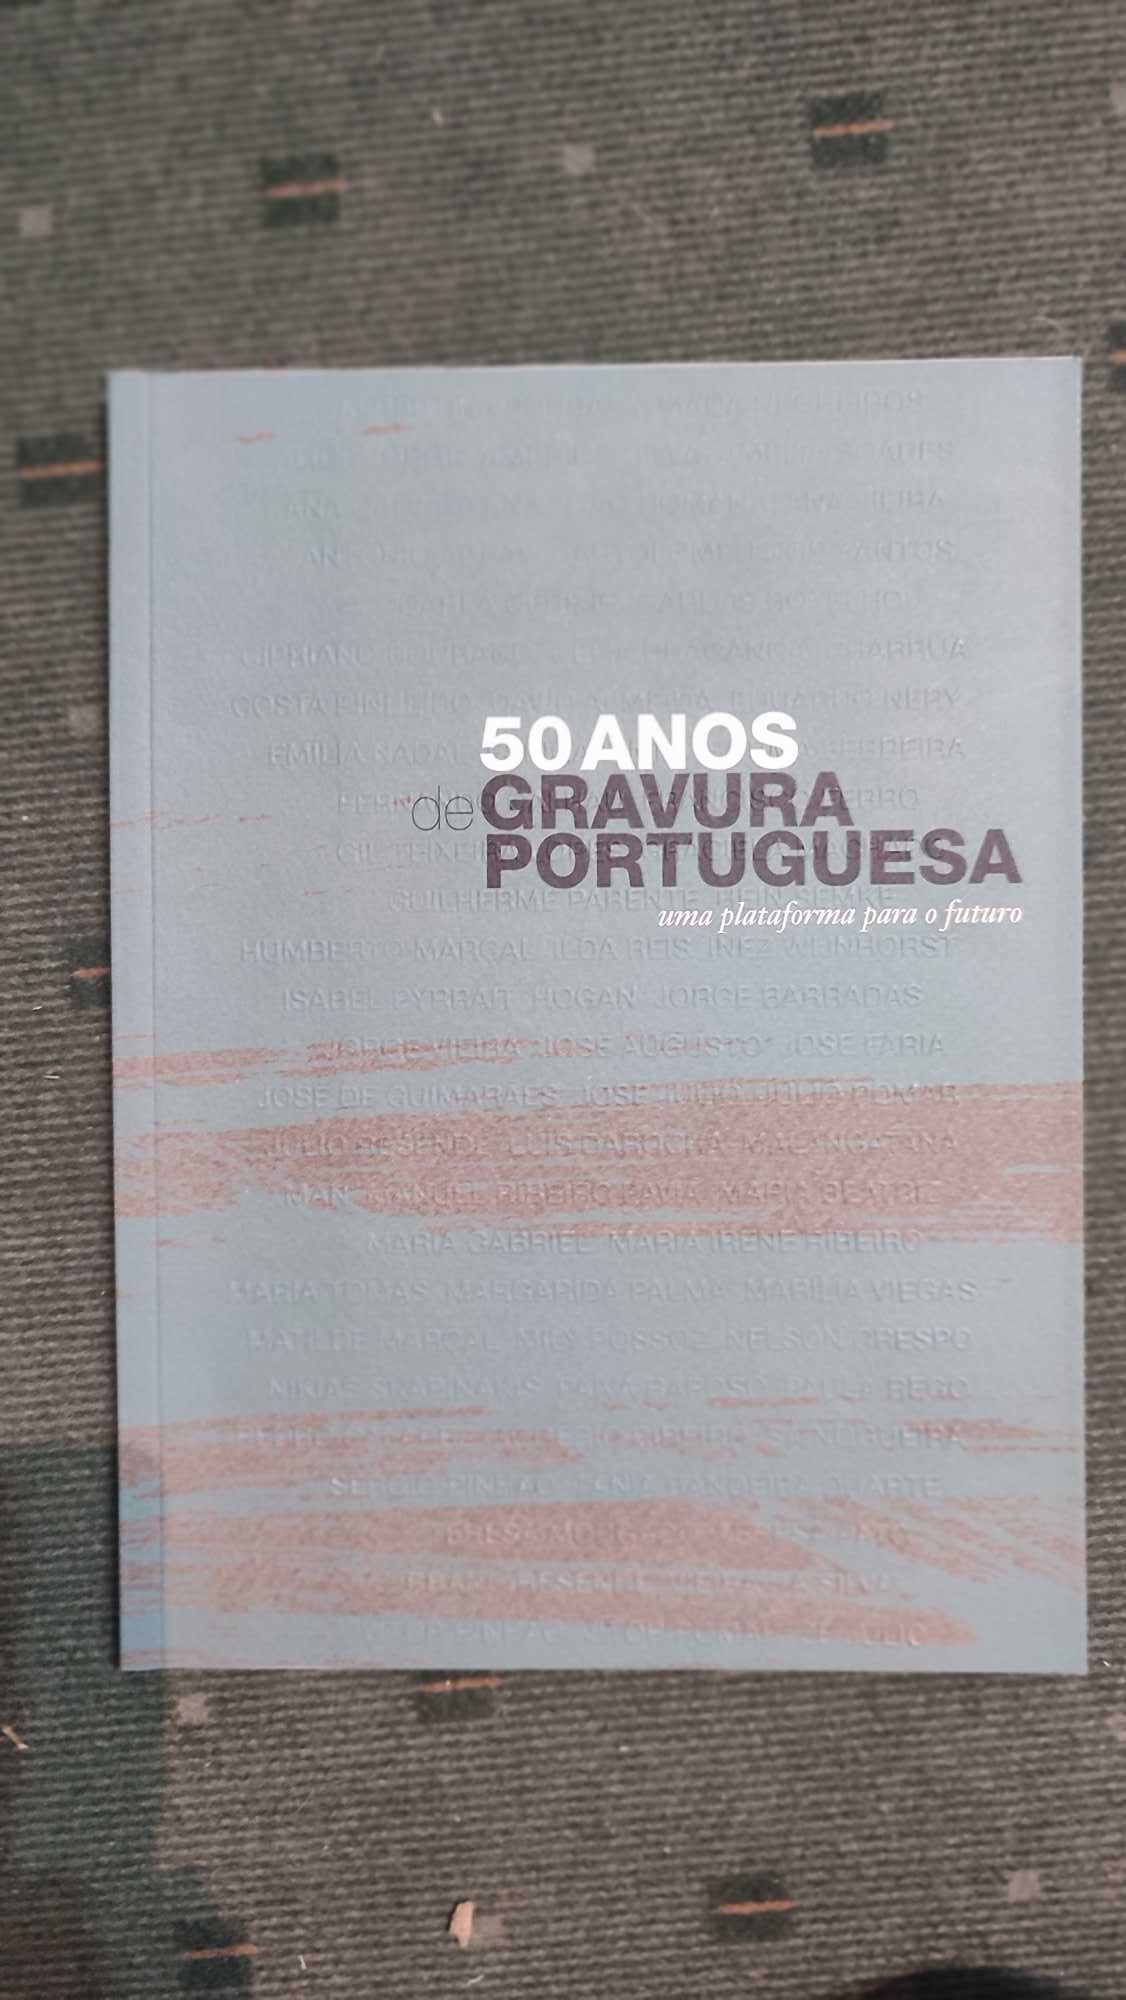 50 anos de gravura Portuguesa